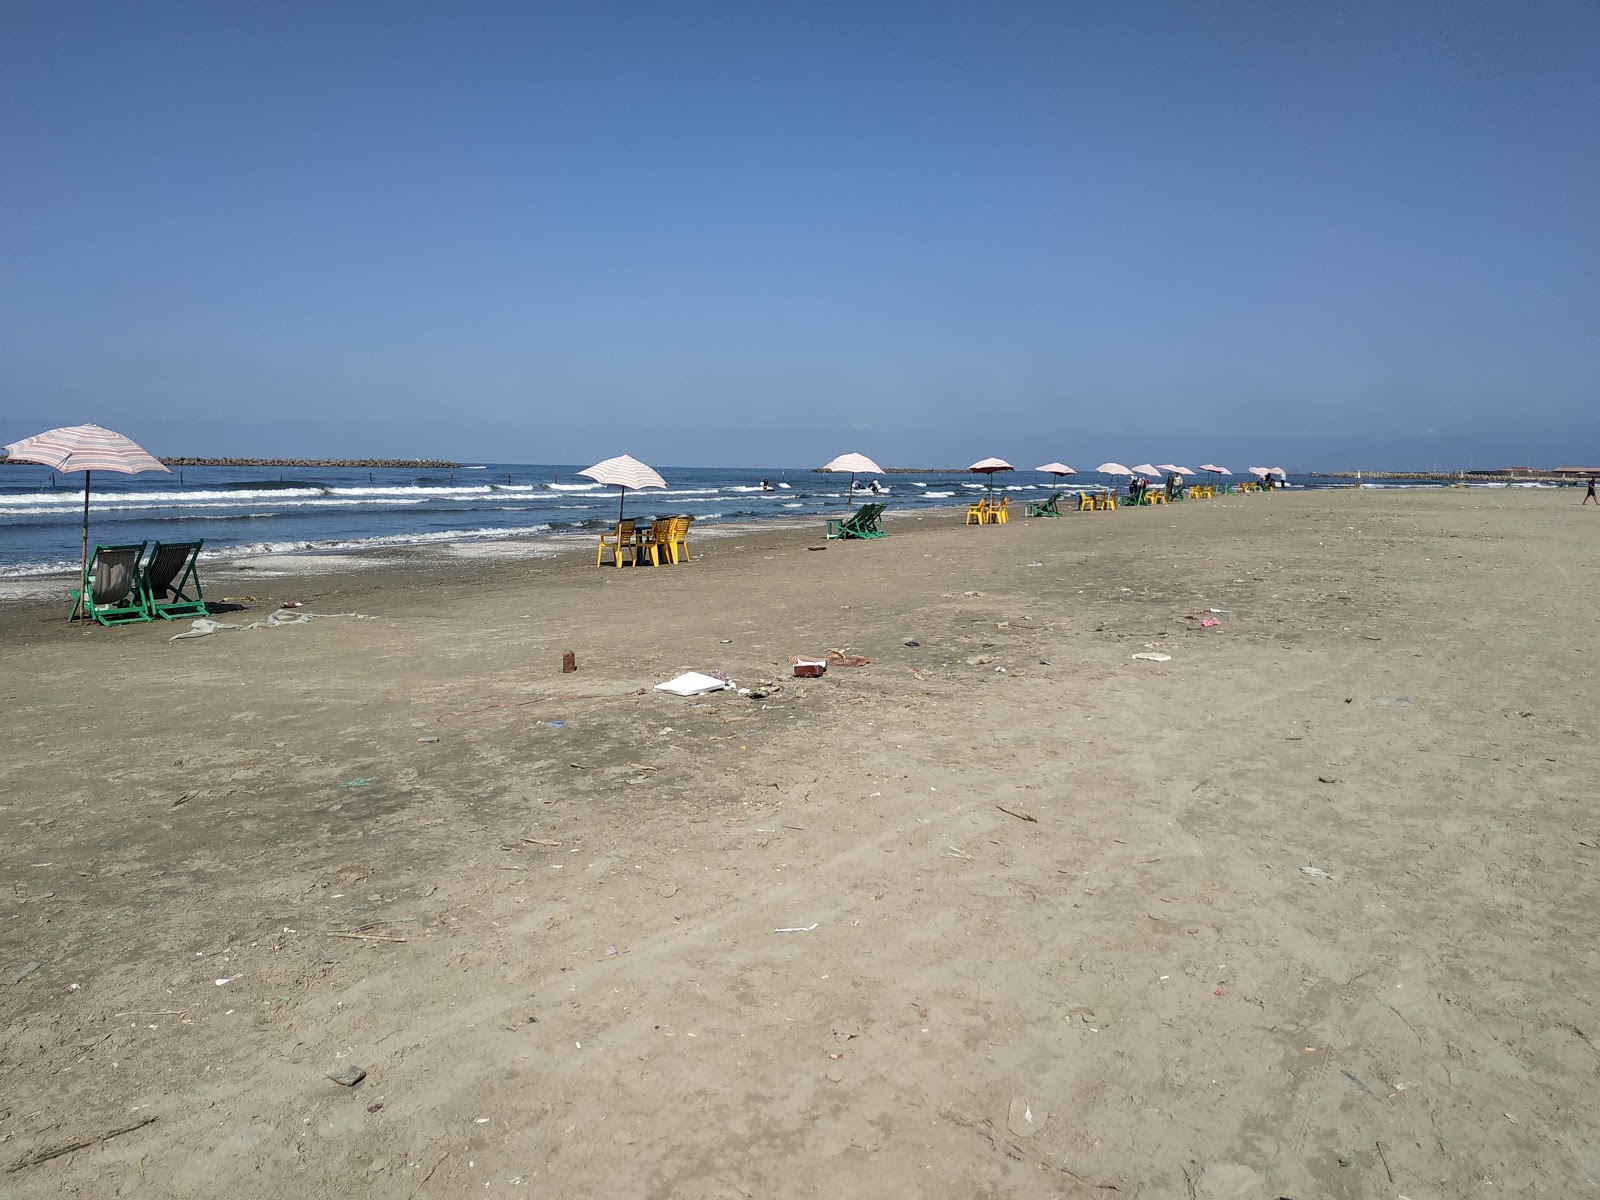 Ras El-Bar Beach'in fotoğrafı parlak kum yüzey ile